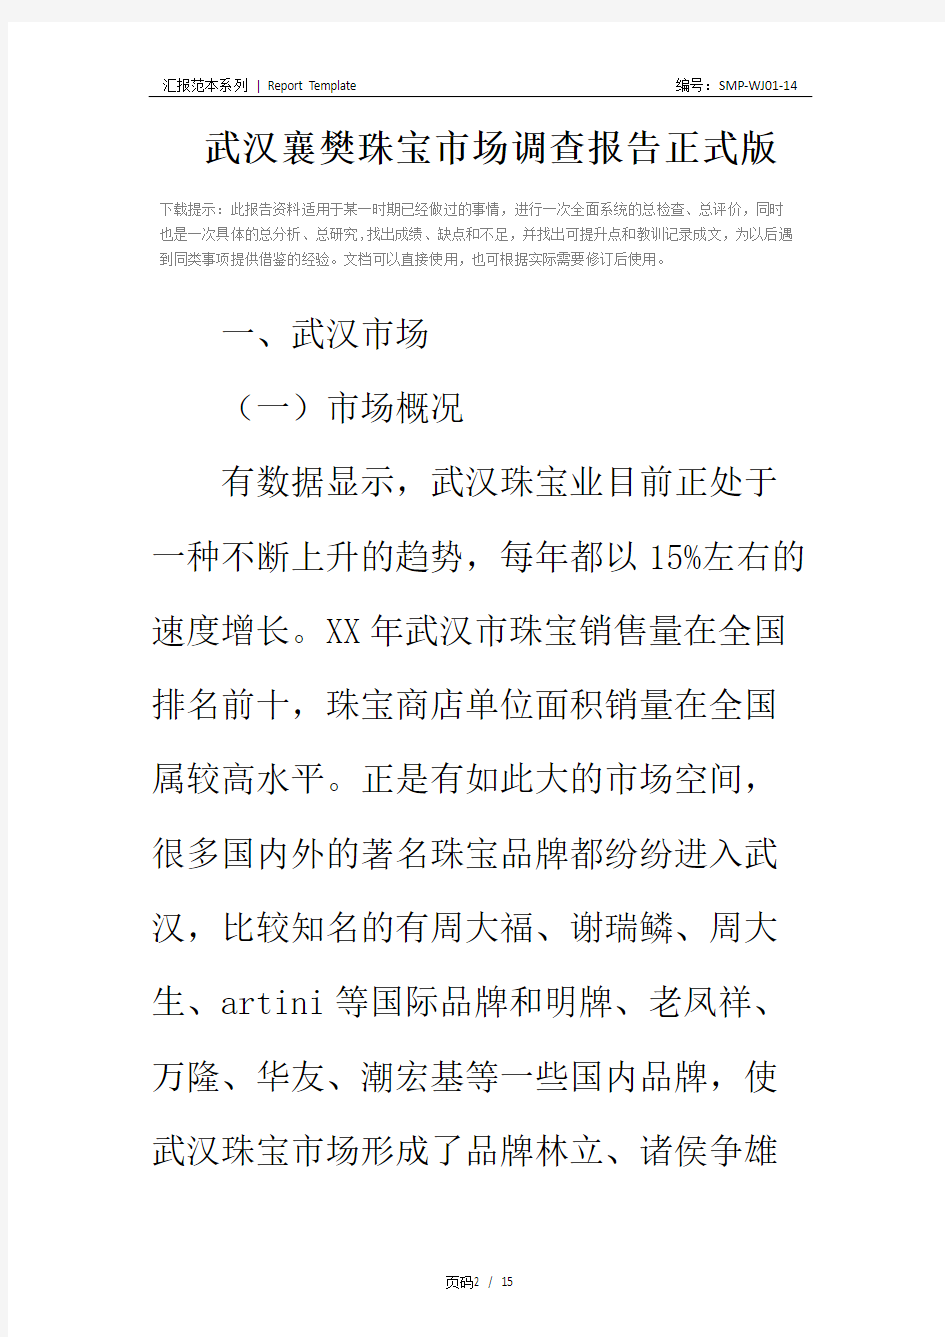 武汉襄樊珠宝市场调查报告正式版